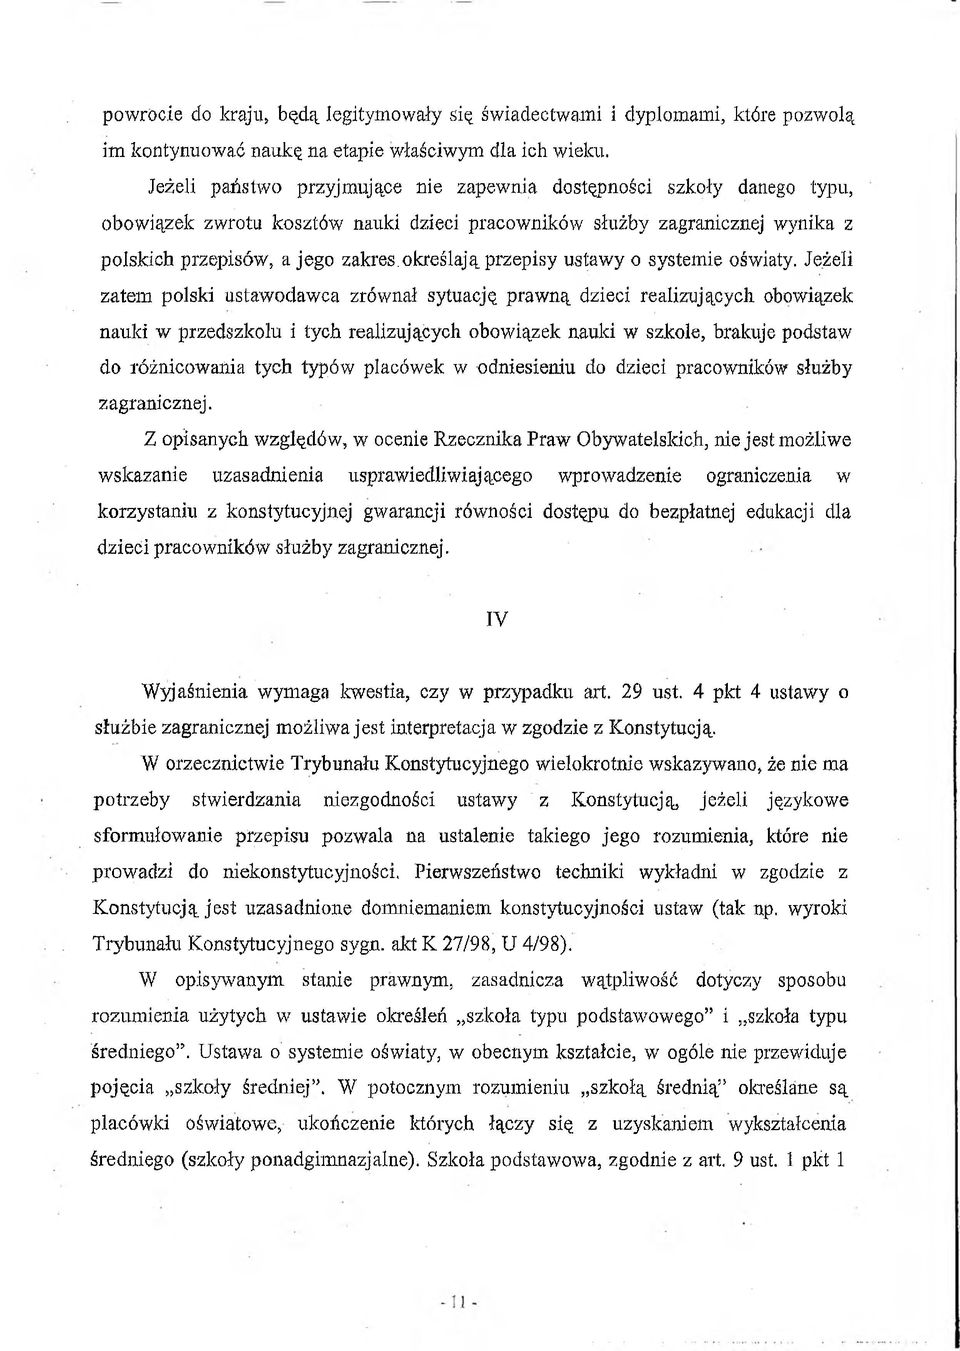 określają przepisy ustawy o systemie oświaty, Jeżeli zatem polski ustawodawca zrównał sytuację prawną dzieci realizującycli obowiązek nauki w przedszkolu i tych realizujących obowiązek nauki w